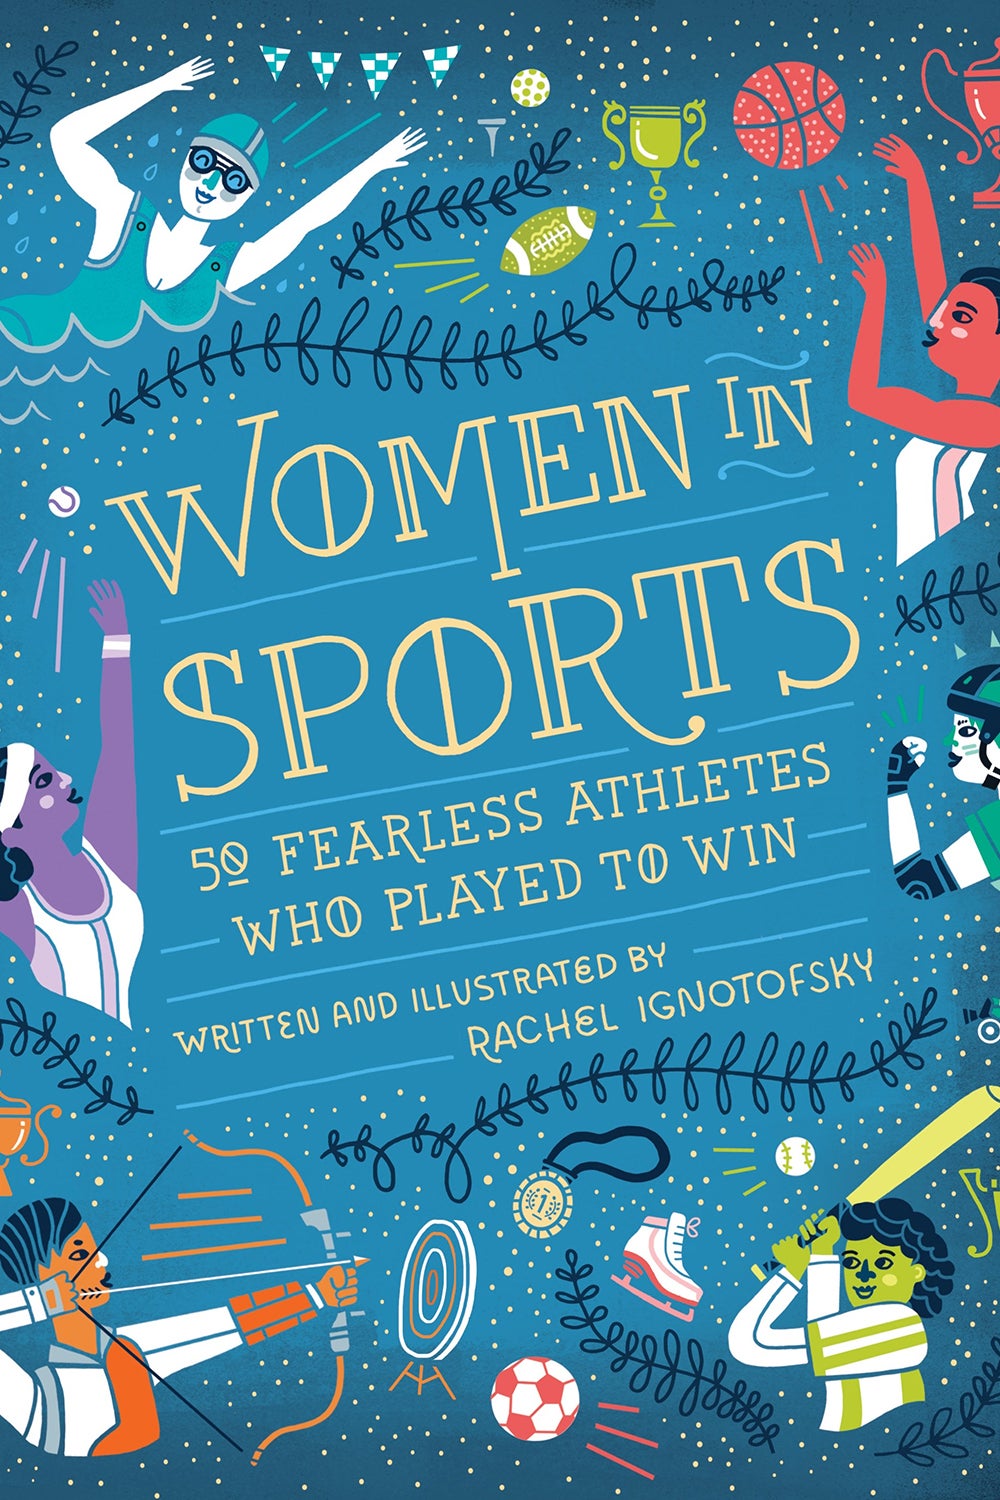 Women in Sports Board Book by Rachel Ignotofsky